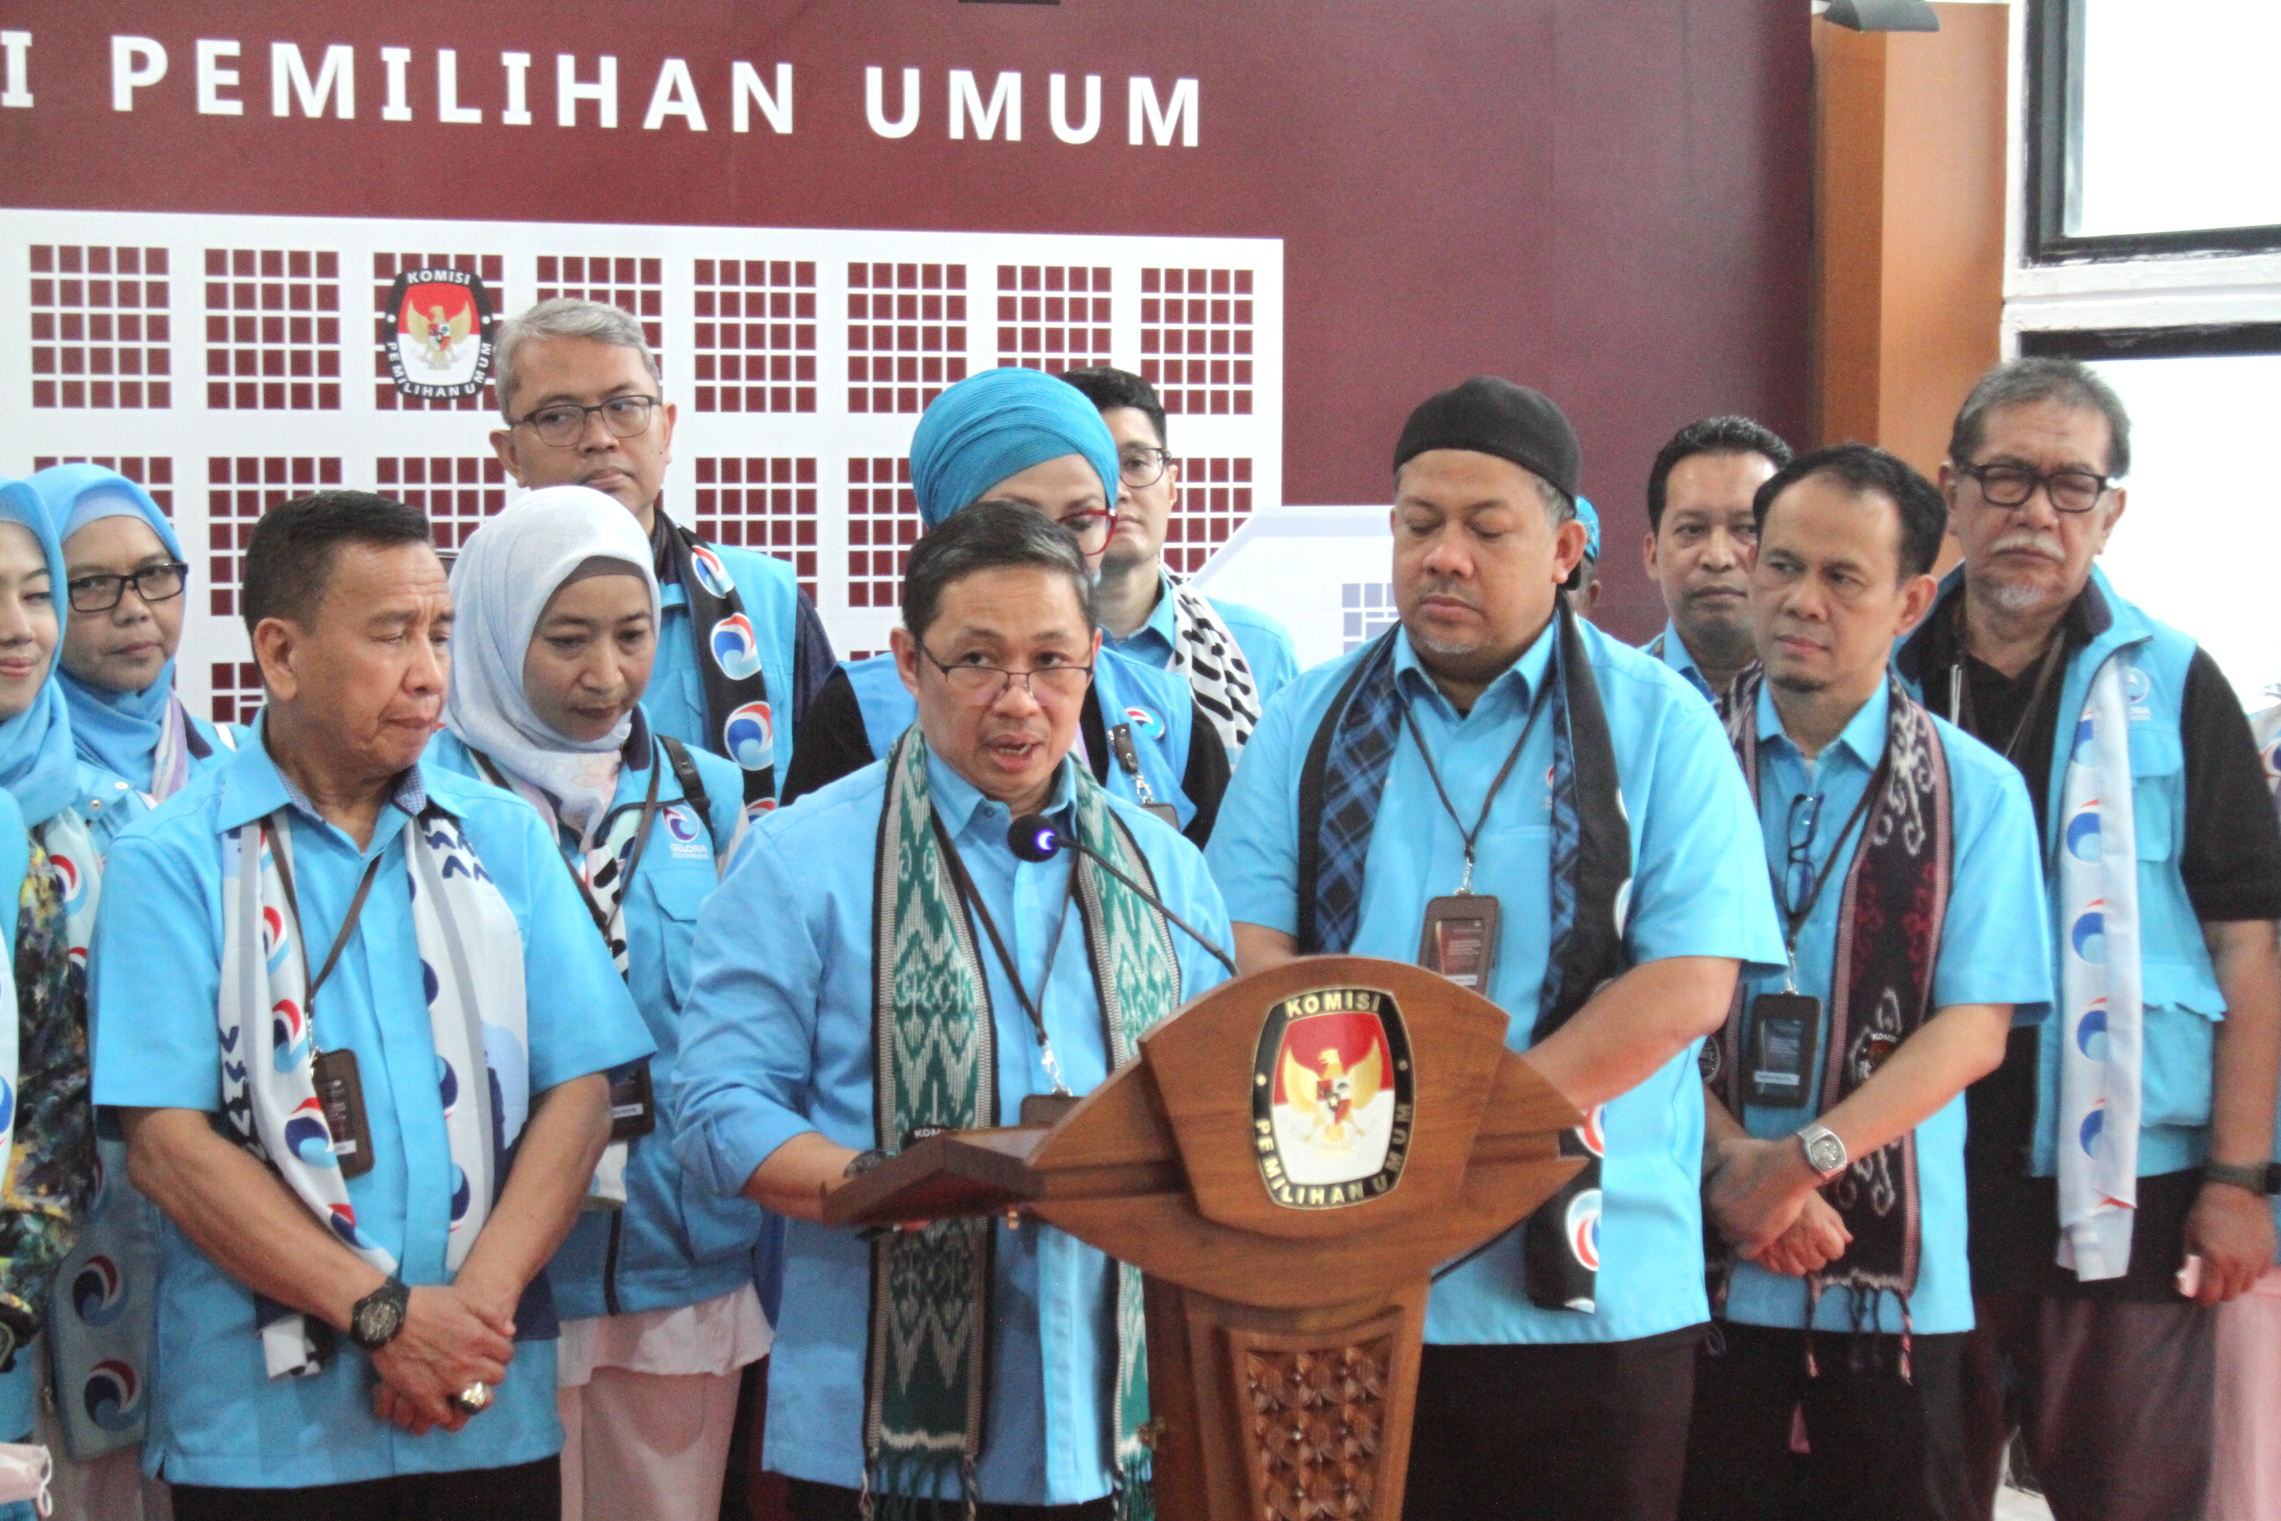 Ketua Umum Partai Gelora Anis Matta dan Ketua KPU RI Hasyim Asy'ari (Ashar/SinPo)